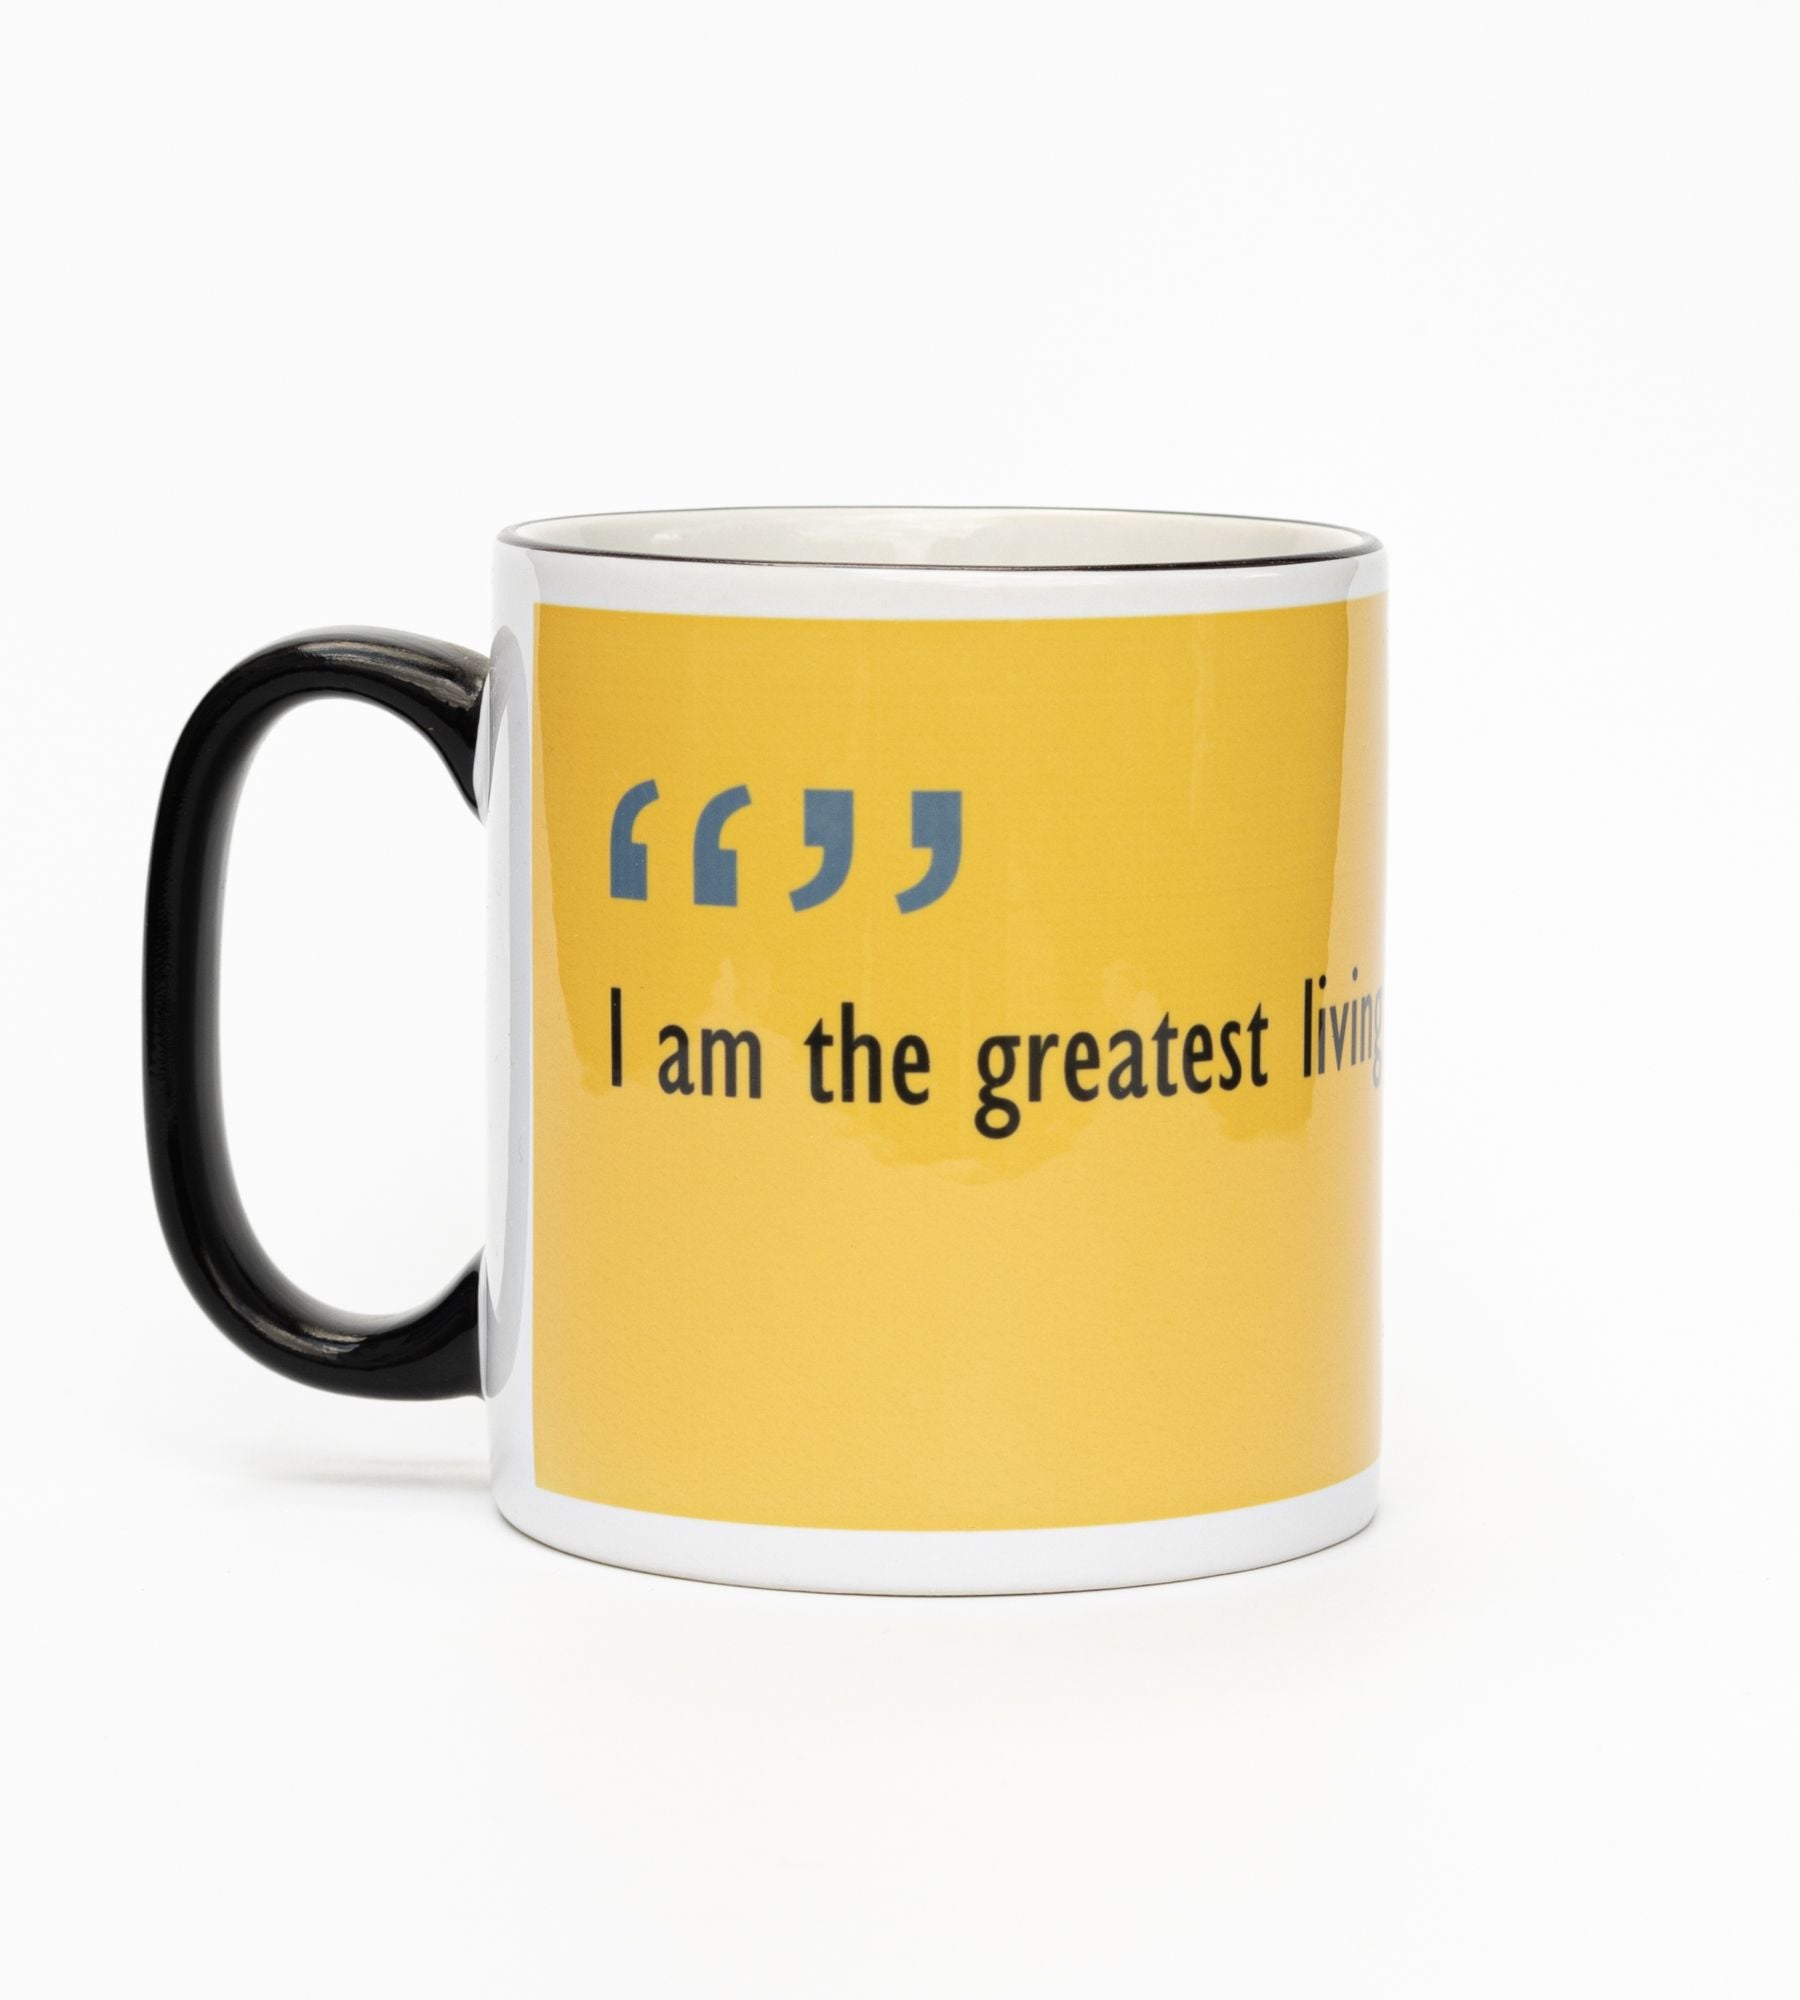 I am the greatest ... - Sir Kyffin Williams Mug